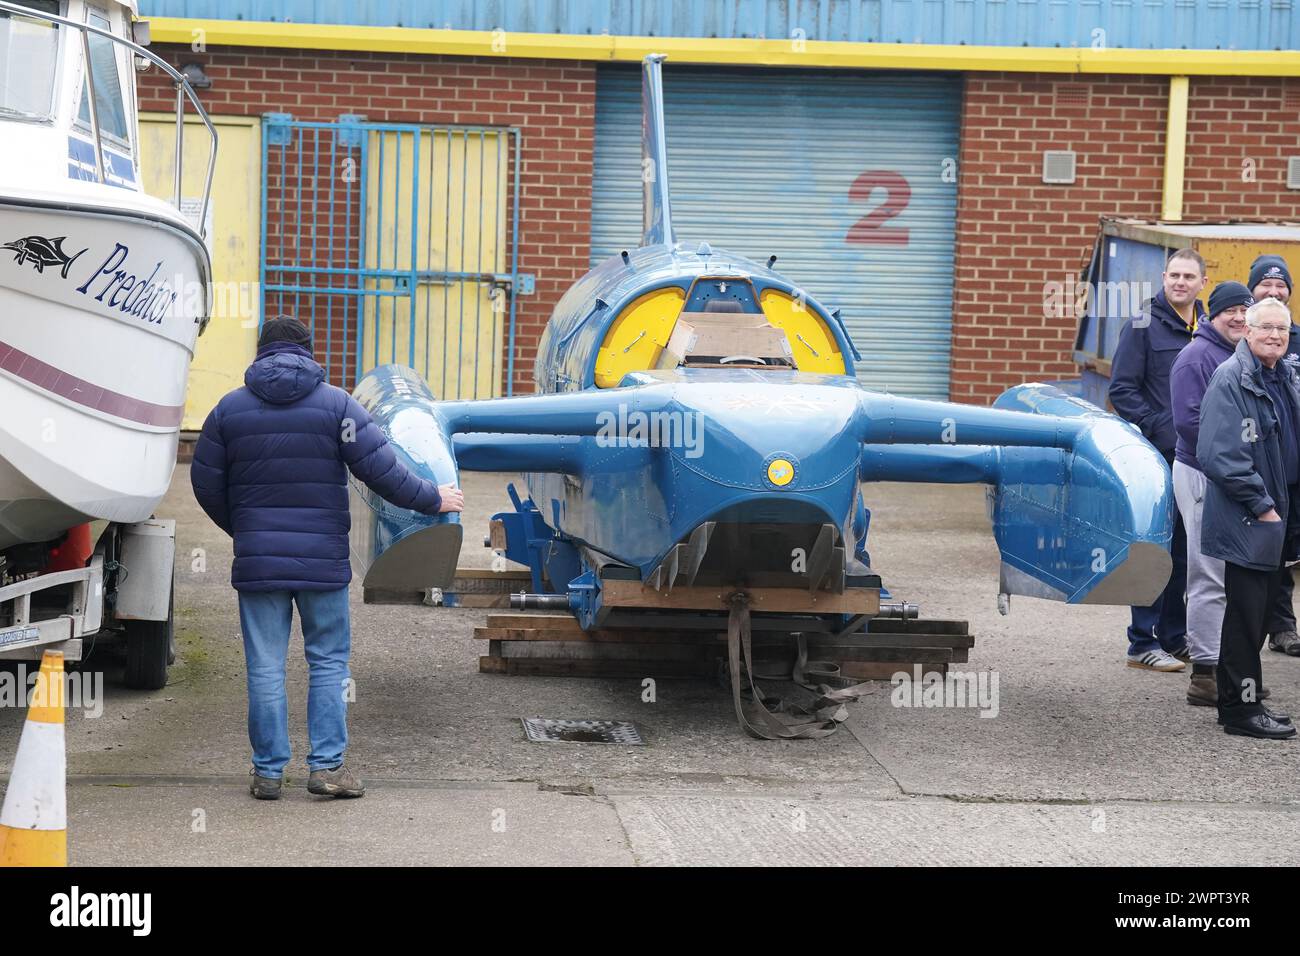 Das restaurierte Wasserflugzeug, Bluebird K7, bevor es auf einen LKW in North Shields geladen wird, als es nach Coniston Water im Lake District zurückkehrt. Bilddatum: Samstag, 9. März 2024. Stockfoto